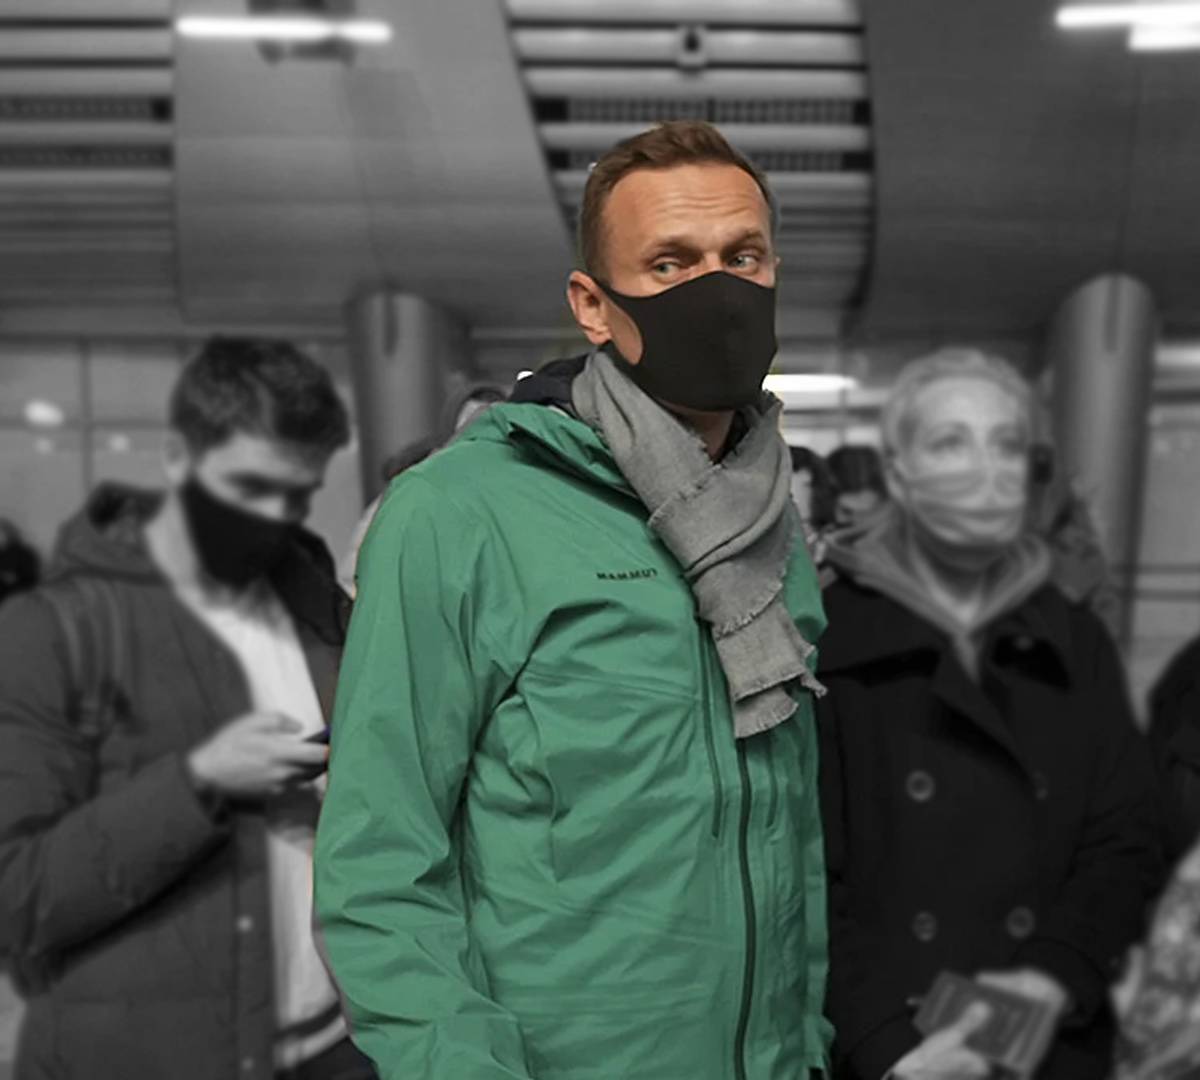 Операция "русский Флойд" Навальный проходит в соответствии со сценарием